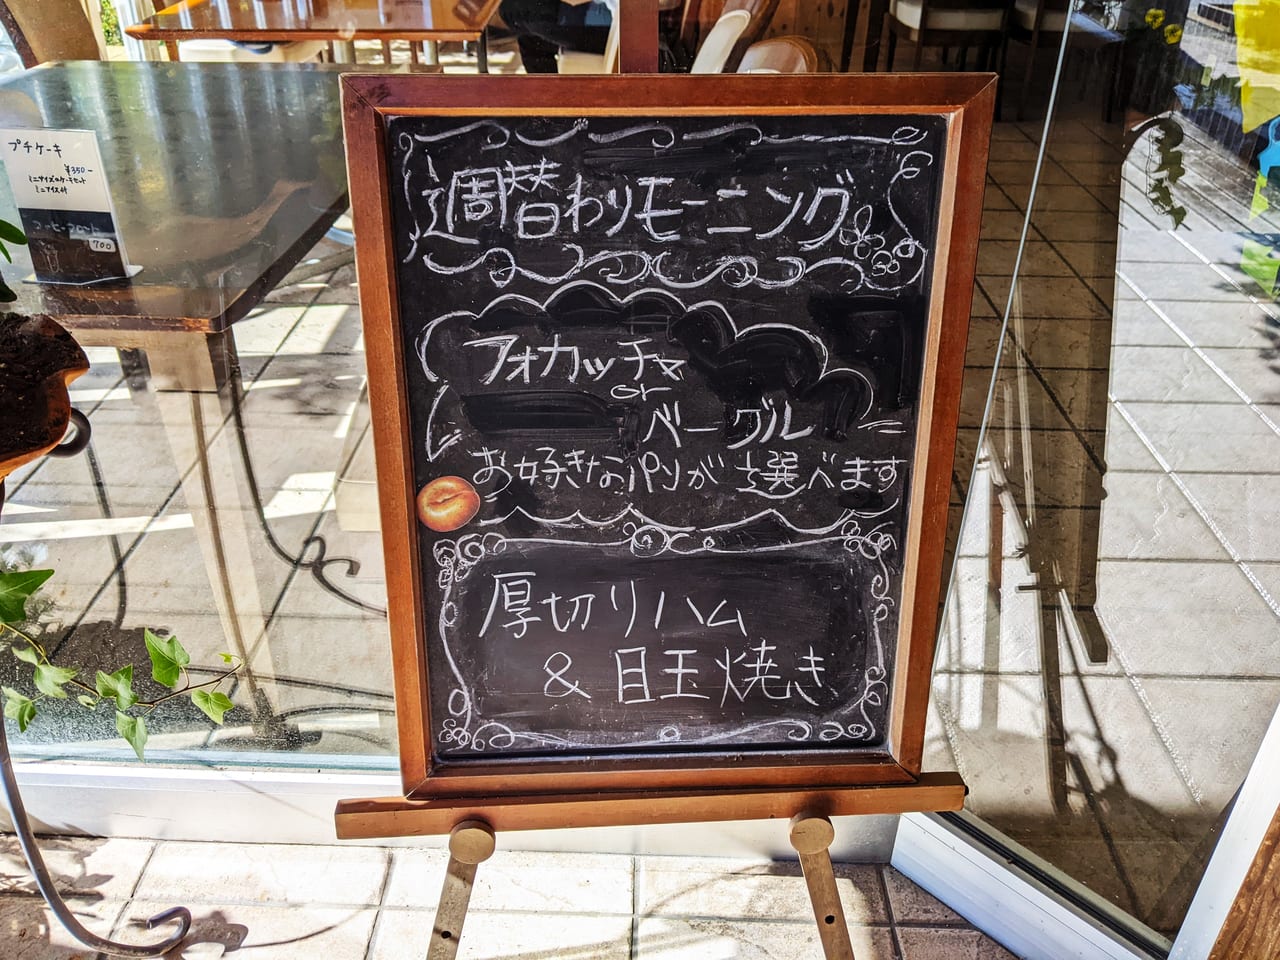 「アロマコーヒーカフェ東岡山店」の看板